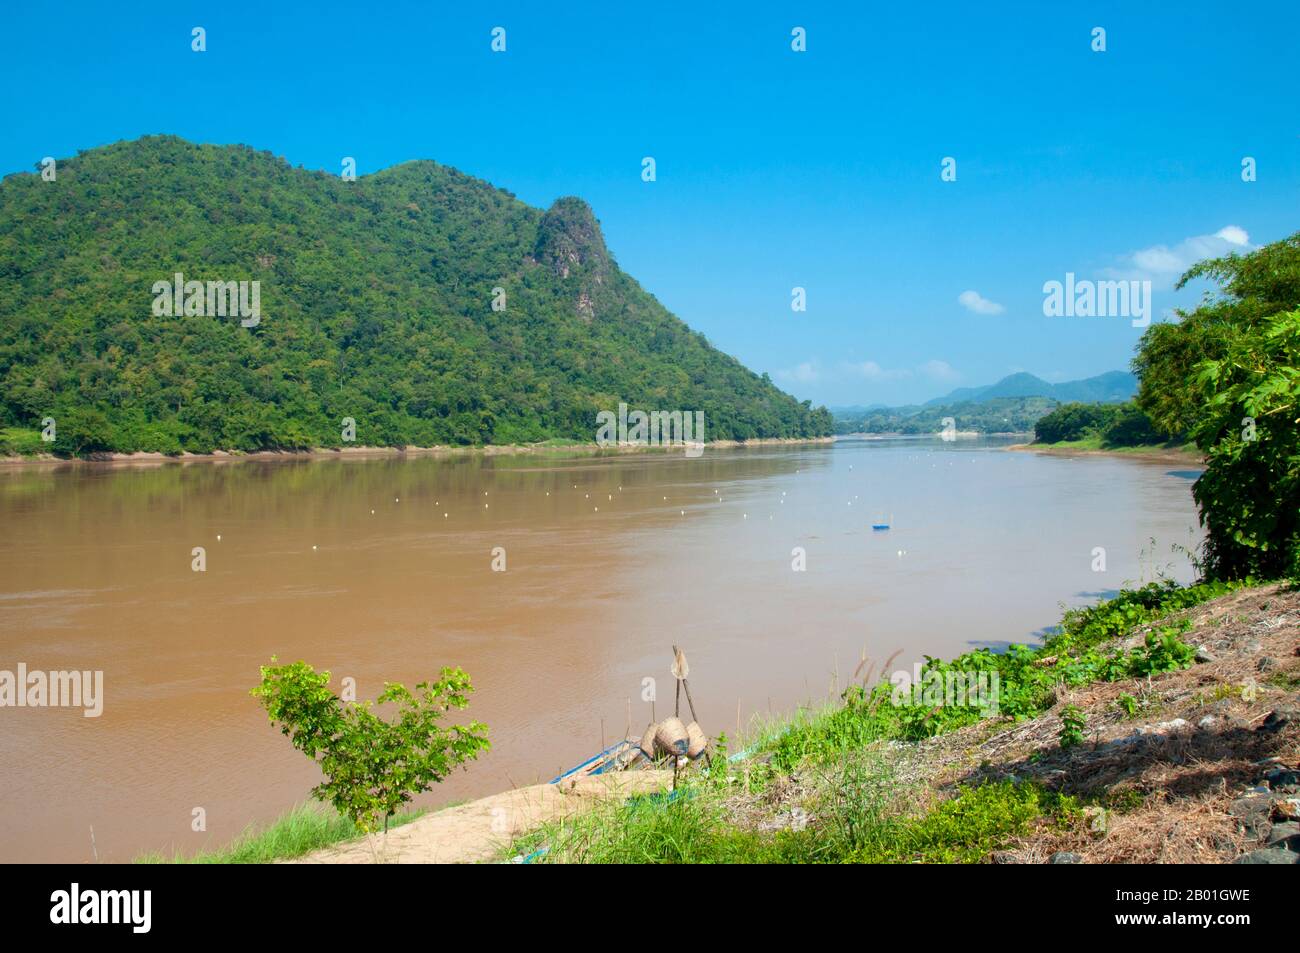 Thailand: Der Mekong in Kaeng Khut Khu, Provinz Loei. Die Provinz Loei (Thai: เลย) befindet sich im oberen Nordosten Thailands. Die benachbarten Provinzen sind (von Osten nach rechts) Nong Khai, Udon Thani, Nongbua Lamphu, Khon Kaen, Phetchabun, Phitsanulok. Im Norden grenzt sie an die Provinzen Xaignabouli und Vientiane in Laos. Die Provinz ist von niedrigen Bergen bedeckt, während die Hauptstadt Loei in einem fruchtbaren Becken liegt. Der Fluss Loei, der durch die Provinz fließt, ist ein Nebenfluss des Mekong. Stockfoto